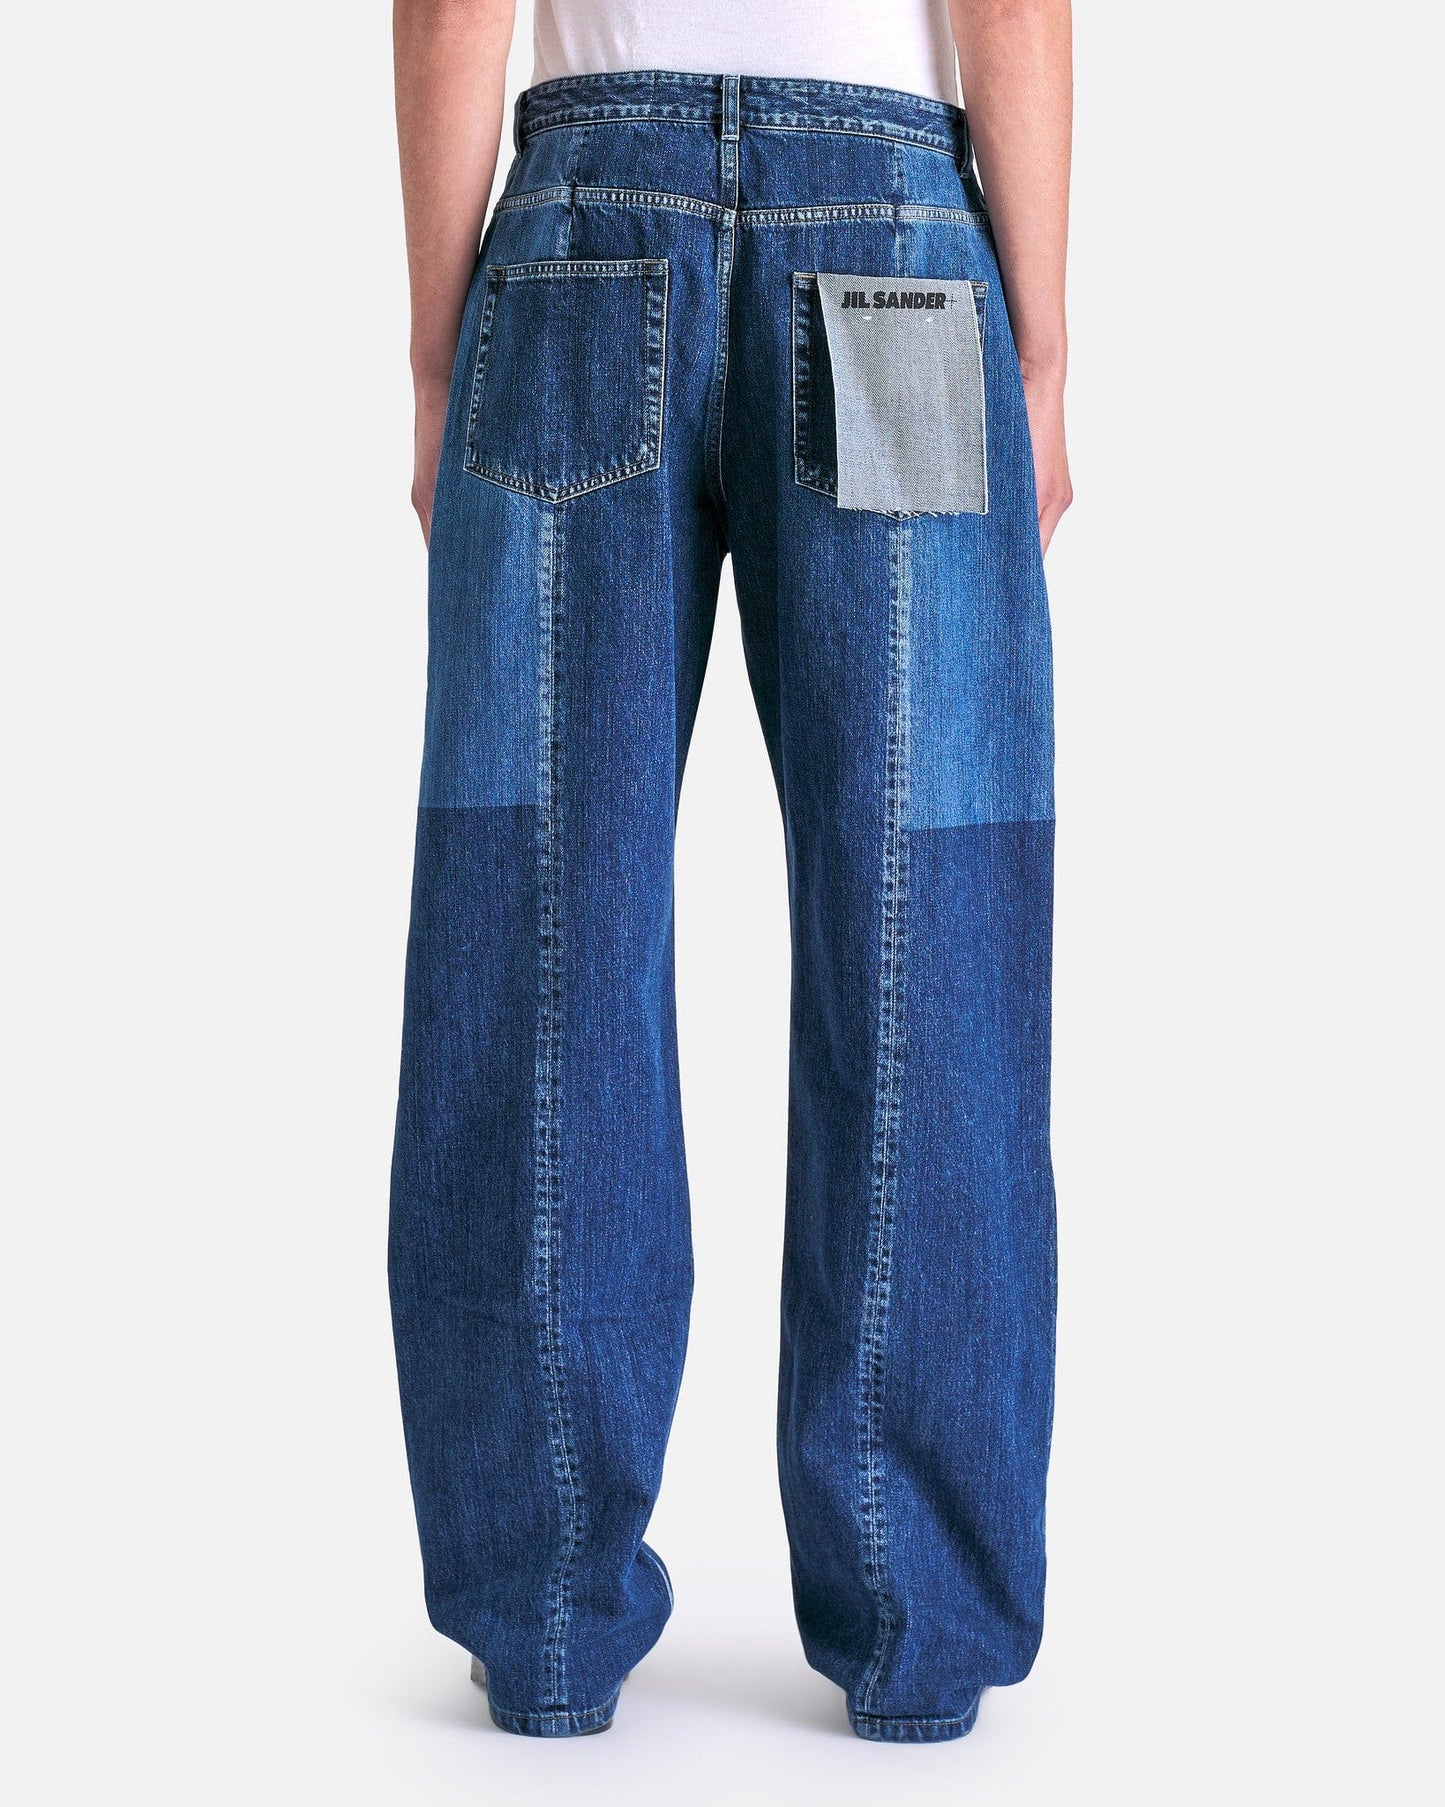 Jil Sander Men's Jeans Five Pocket Washed Raw Denim in Cobalt Light Blue